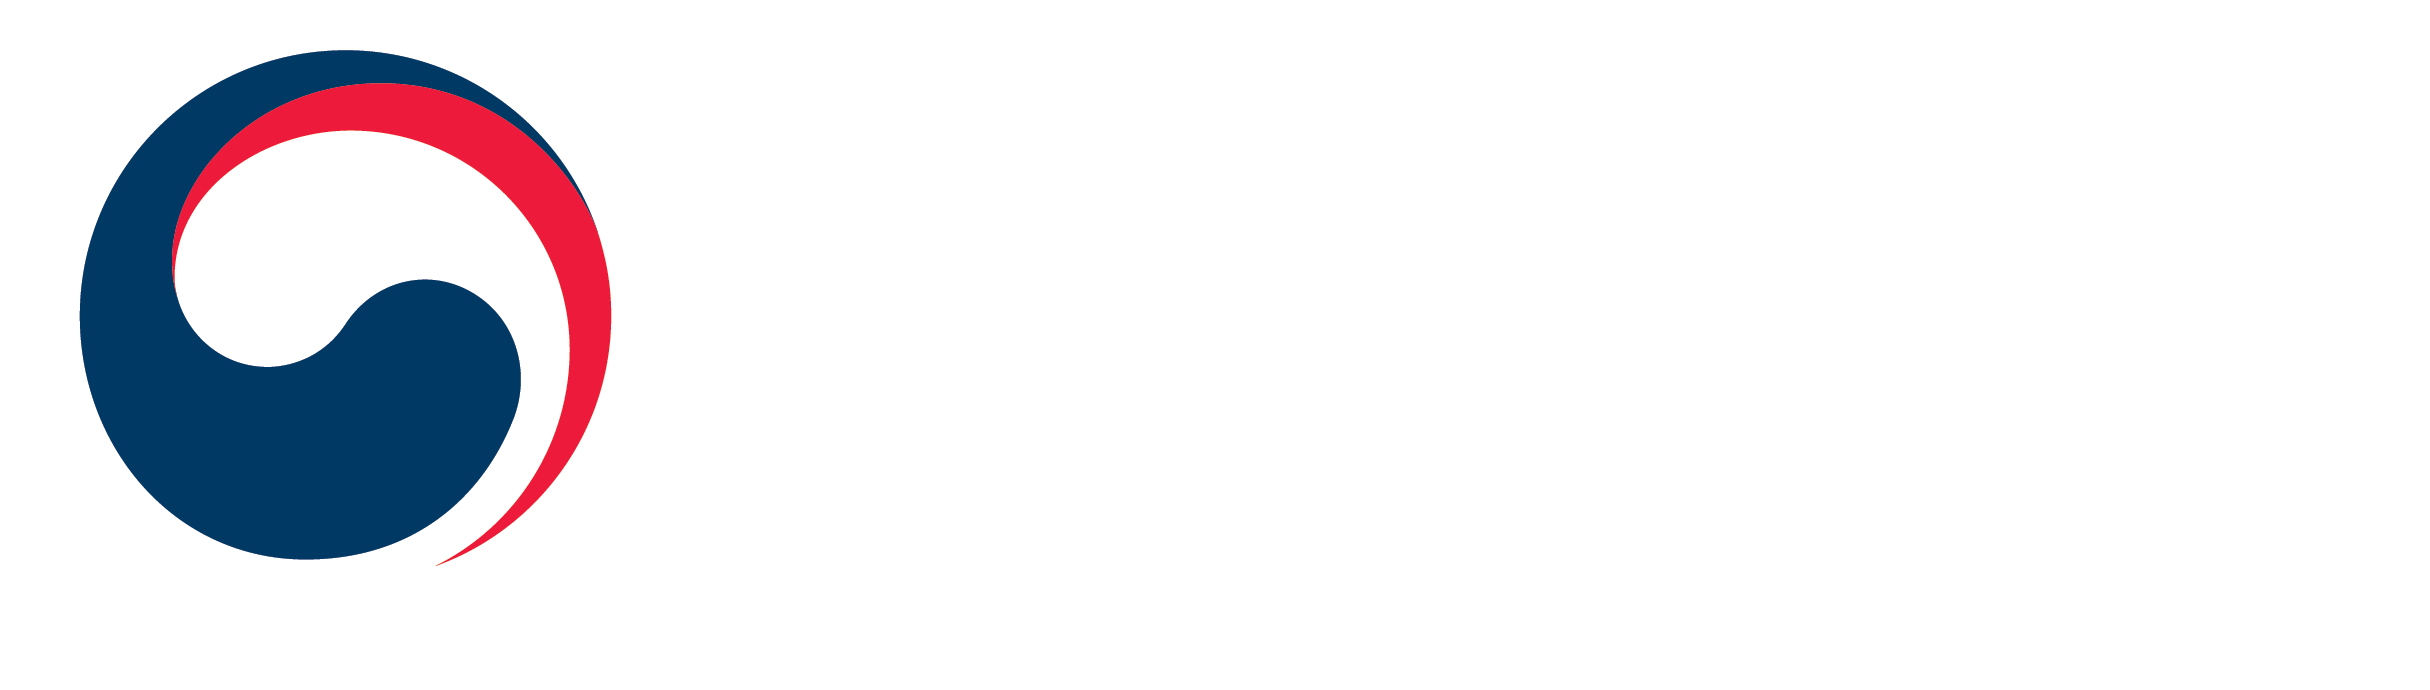 문화체육관광부 로고